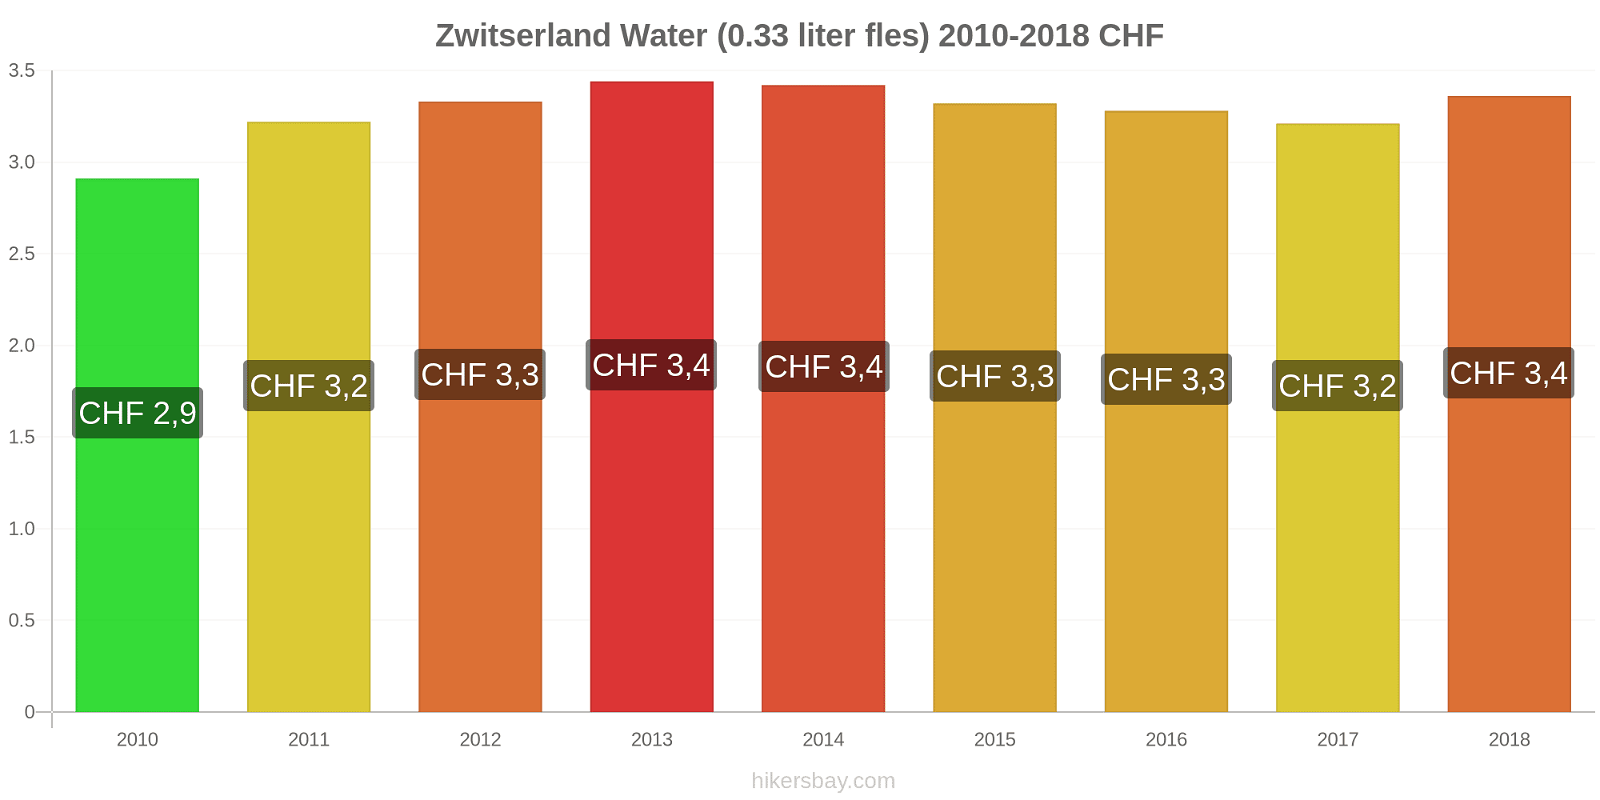 Zwitserland prijswijzigingen Water (0,33 liter fles) hikersbay.com